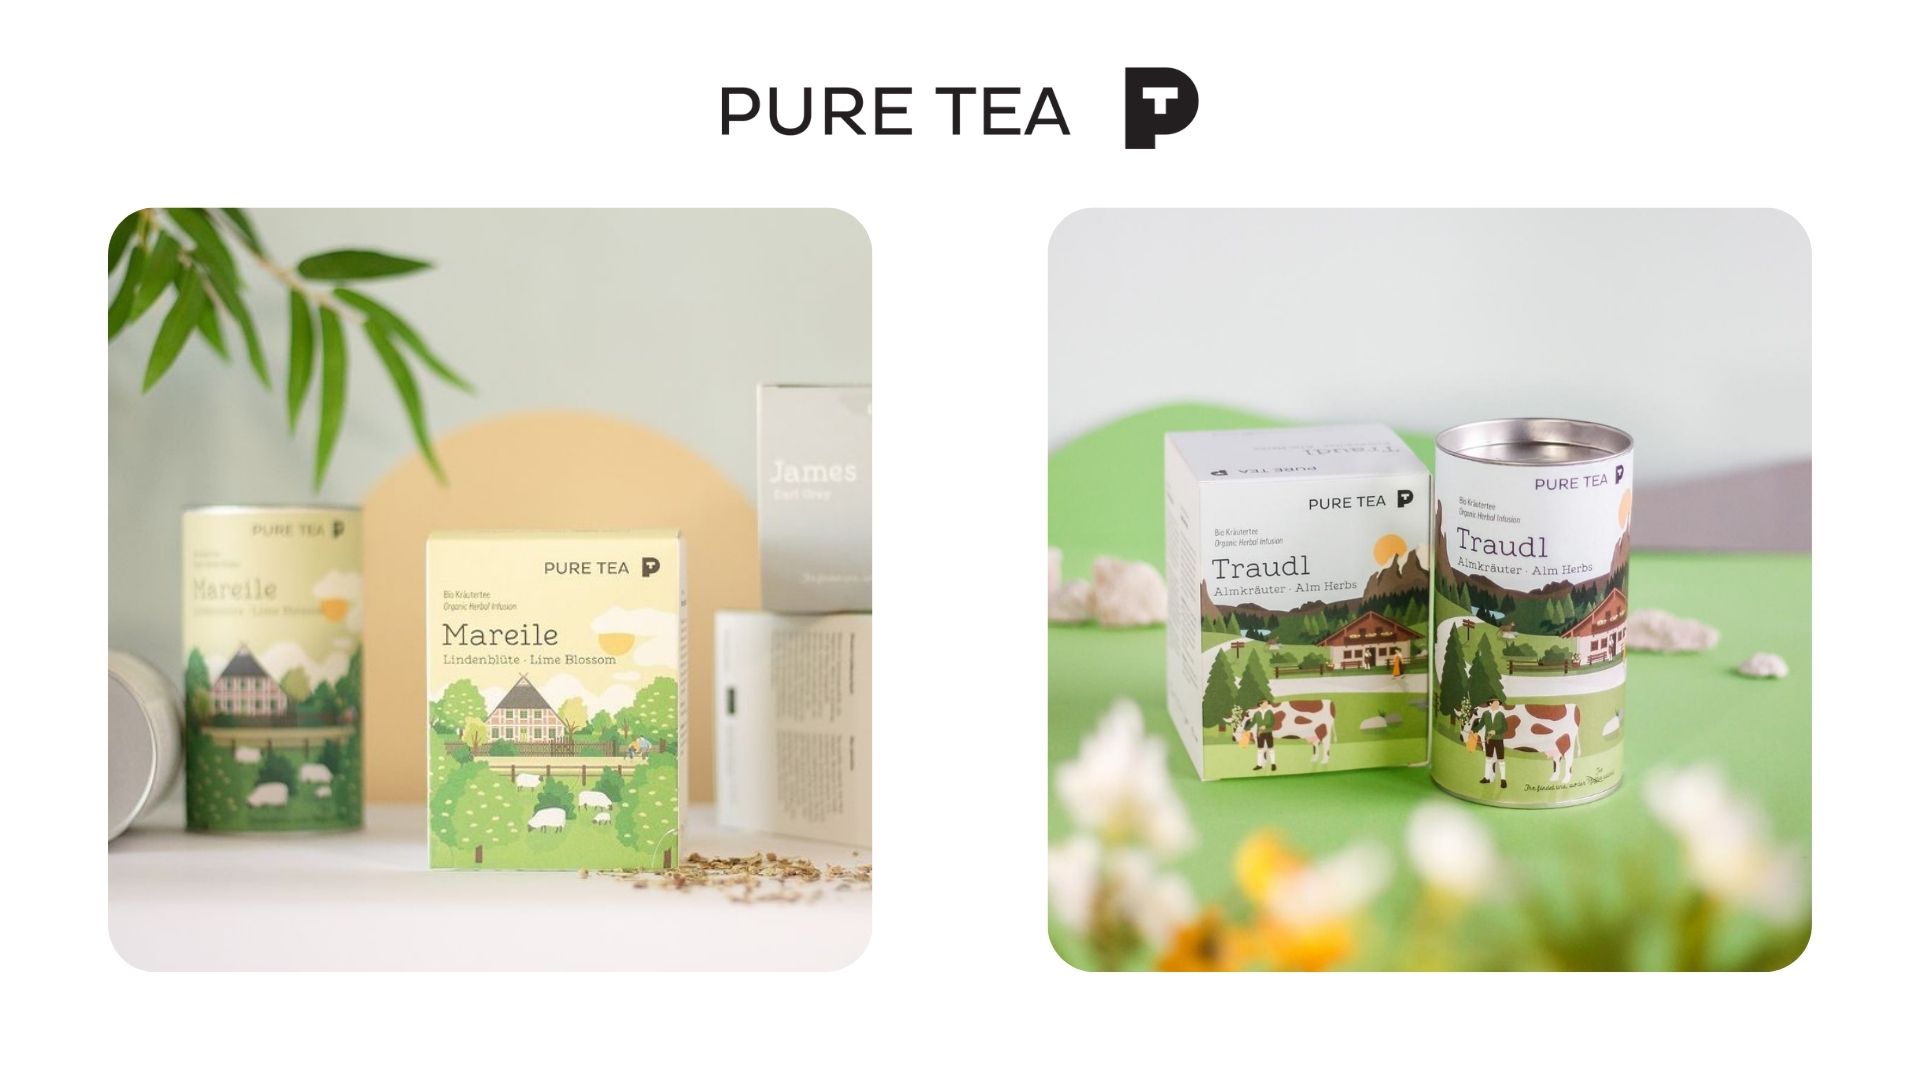 Branded tea packaging